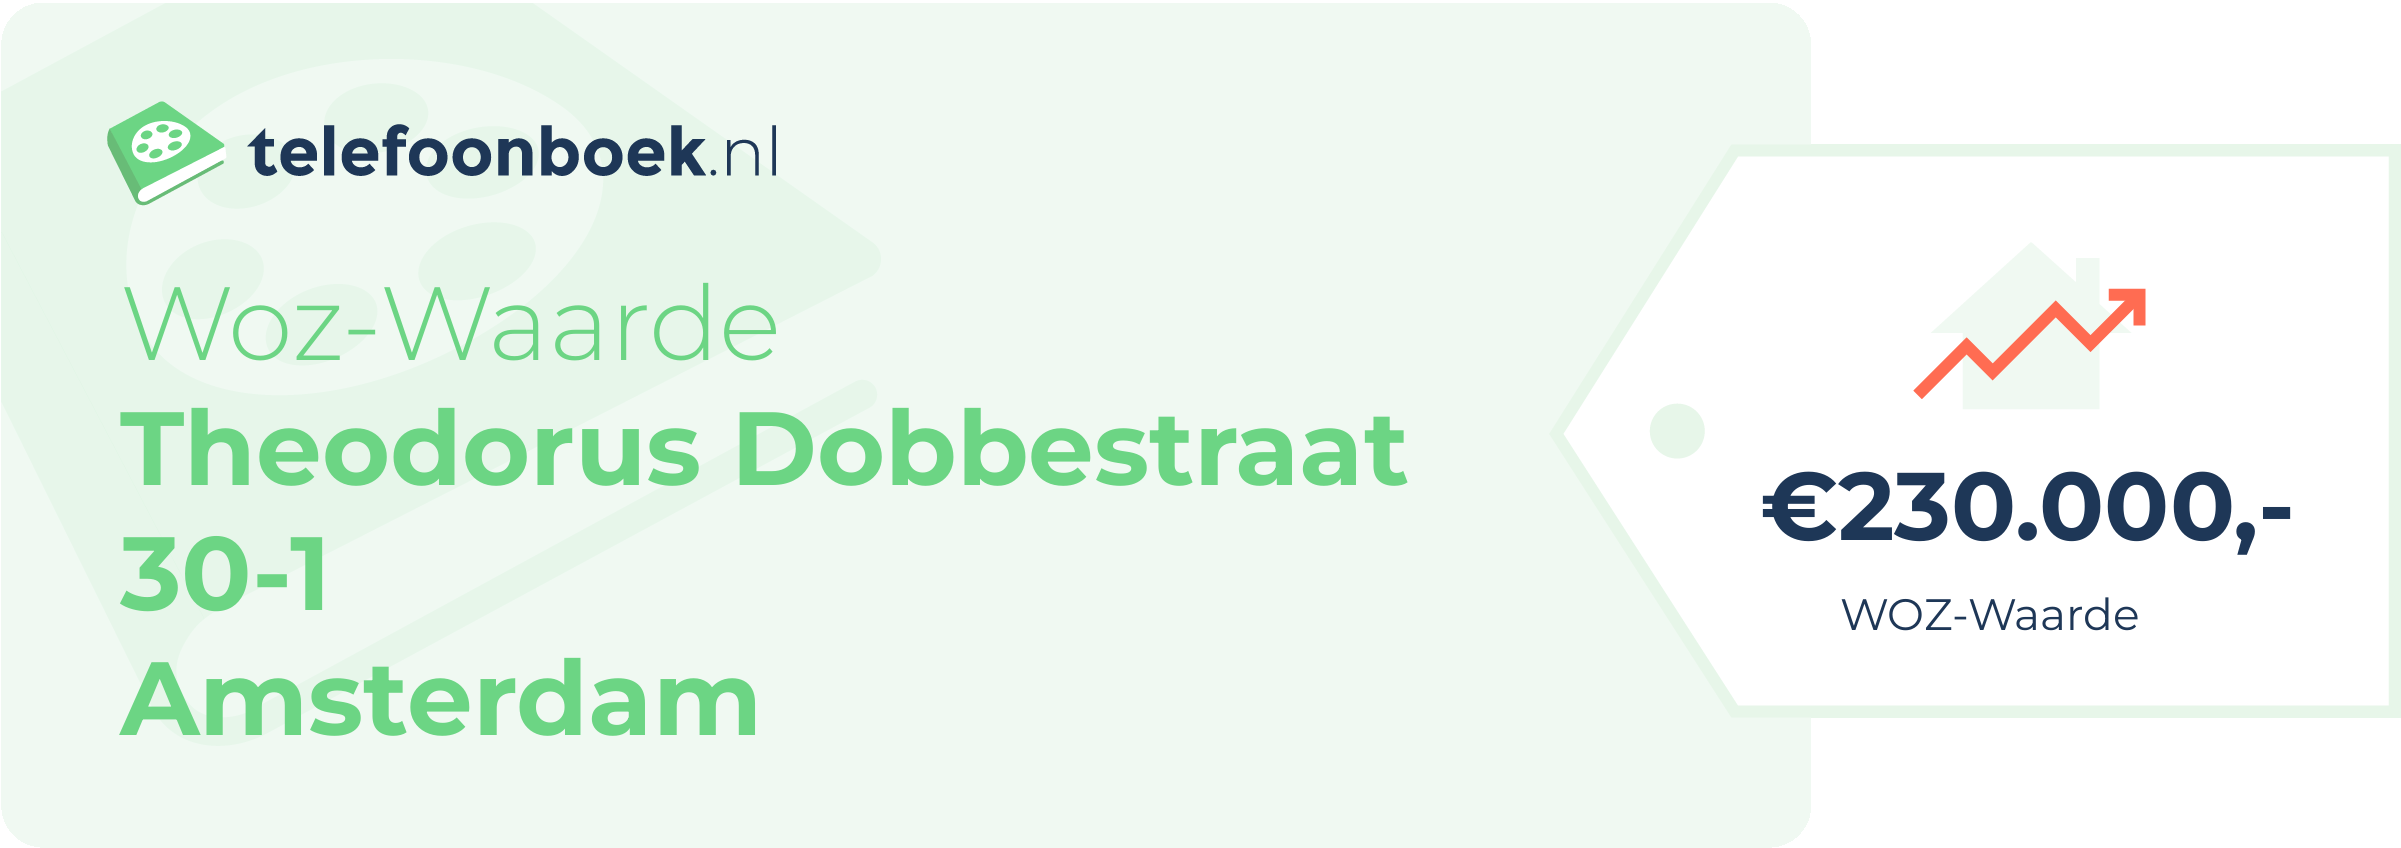 WOZ-waarde Theodorus Dobbestraat 30-1 Amsterdam